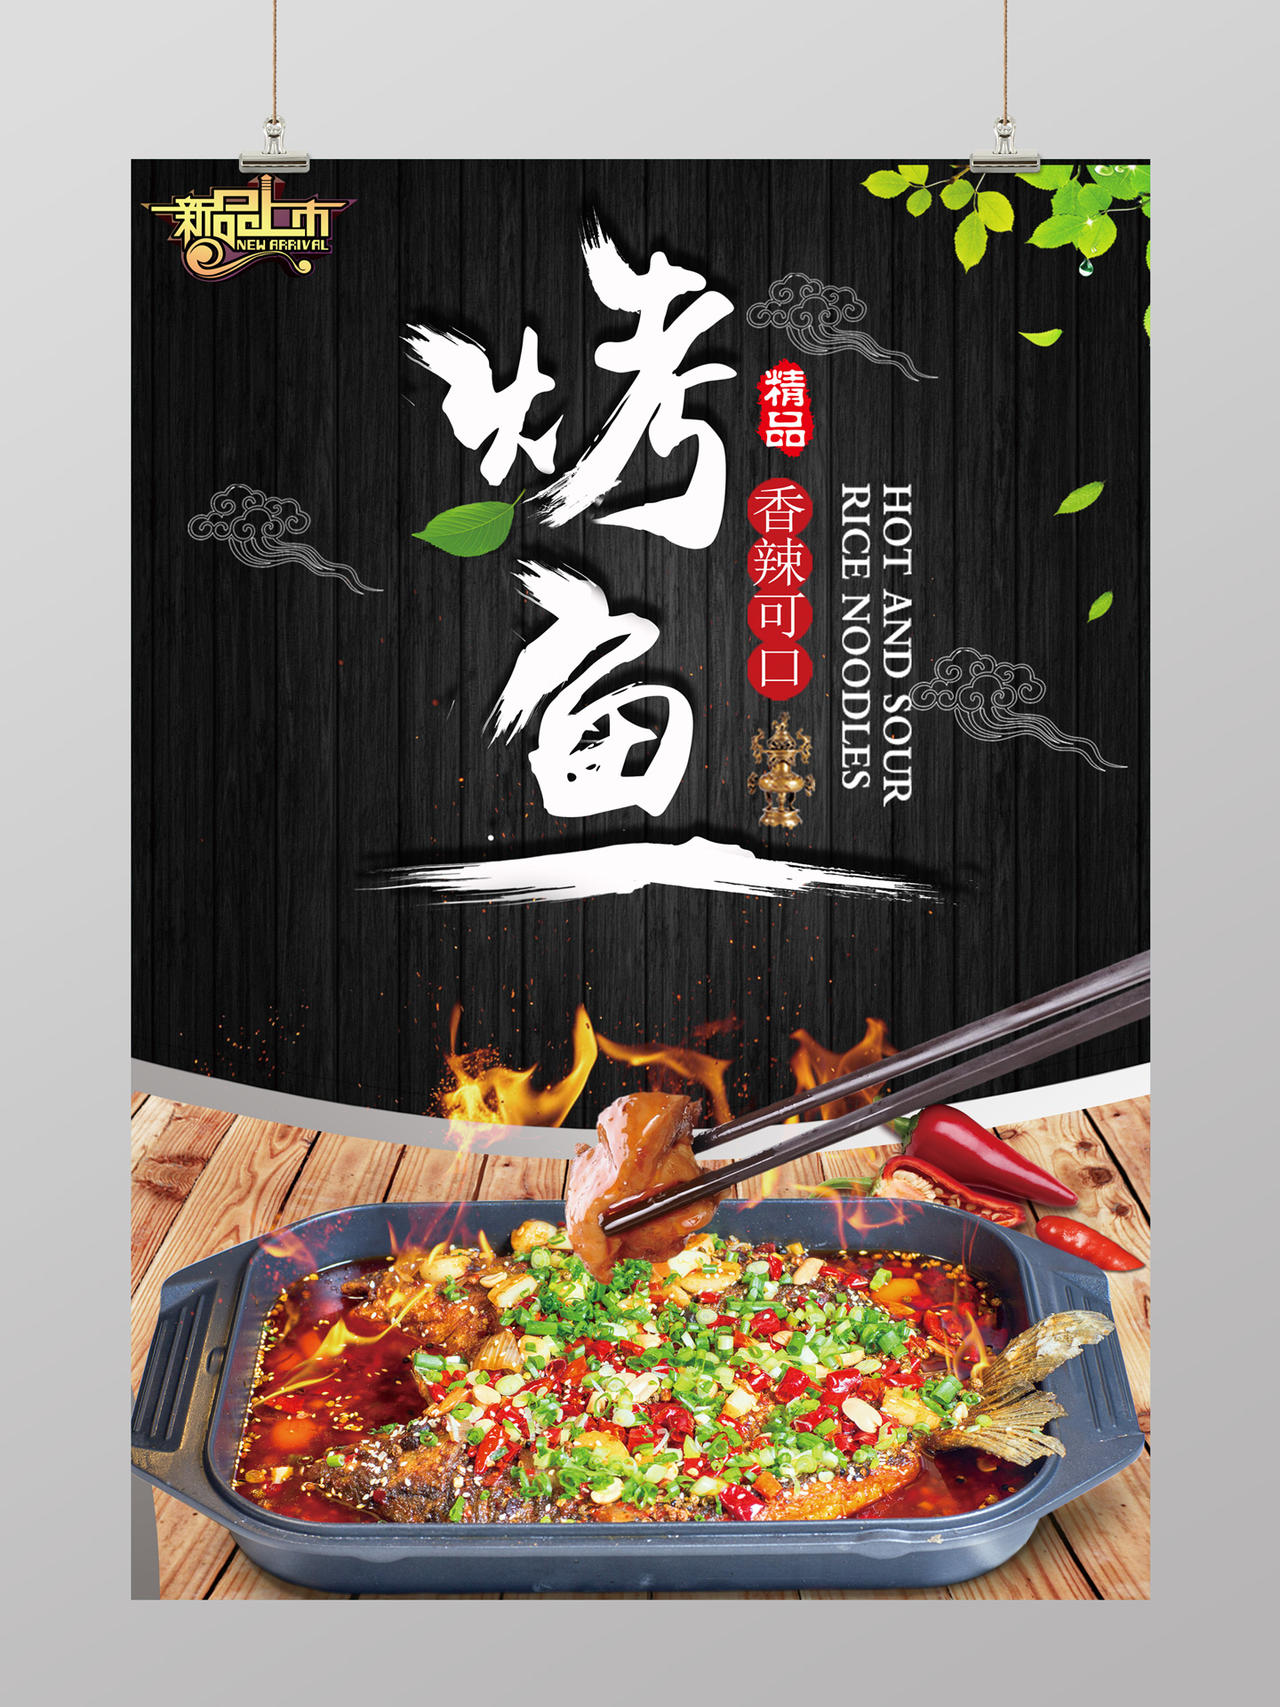 中国风烤鱼美食宣传海报设计